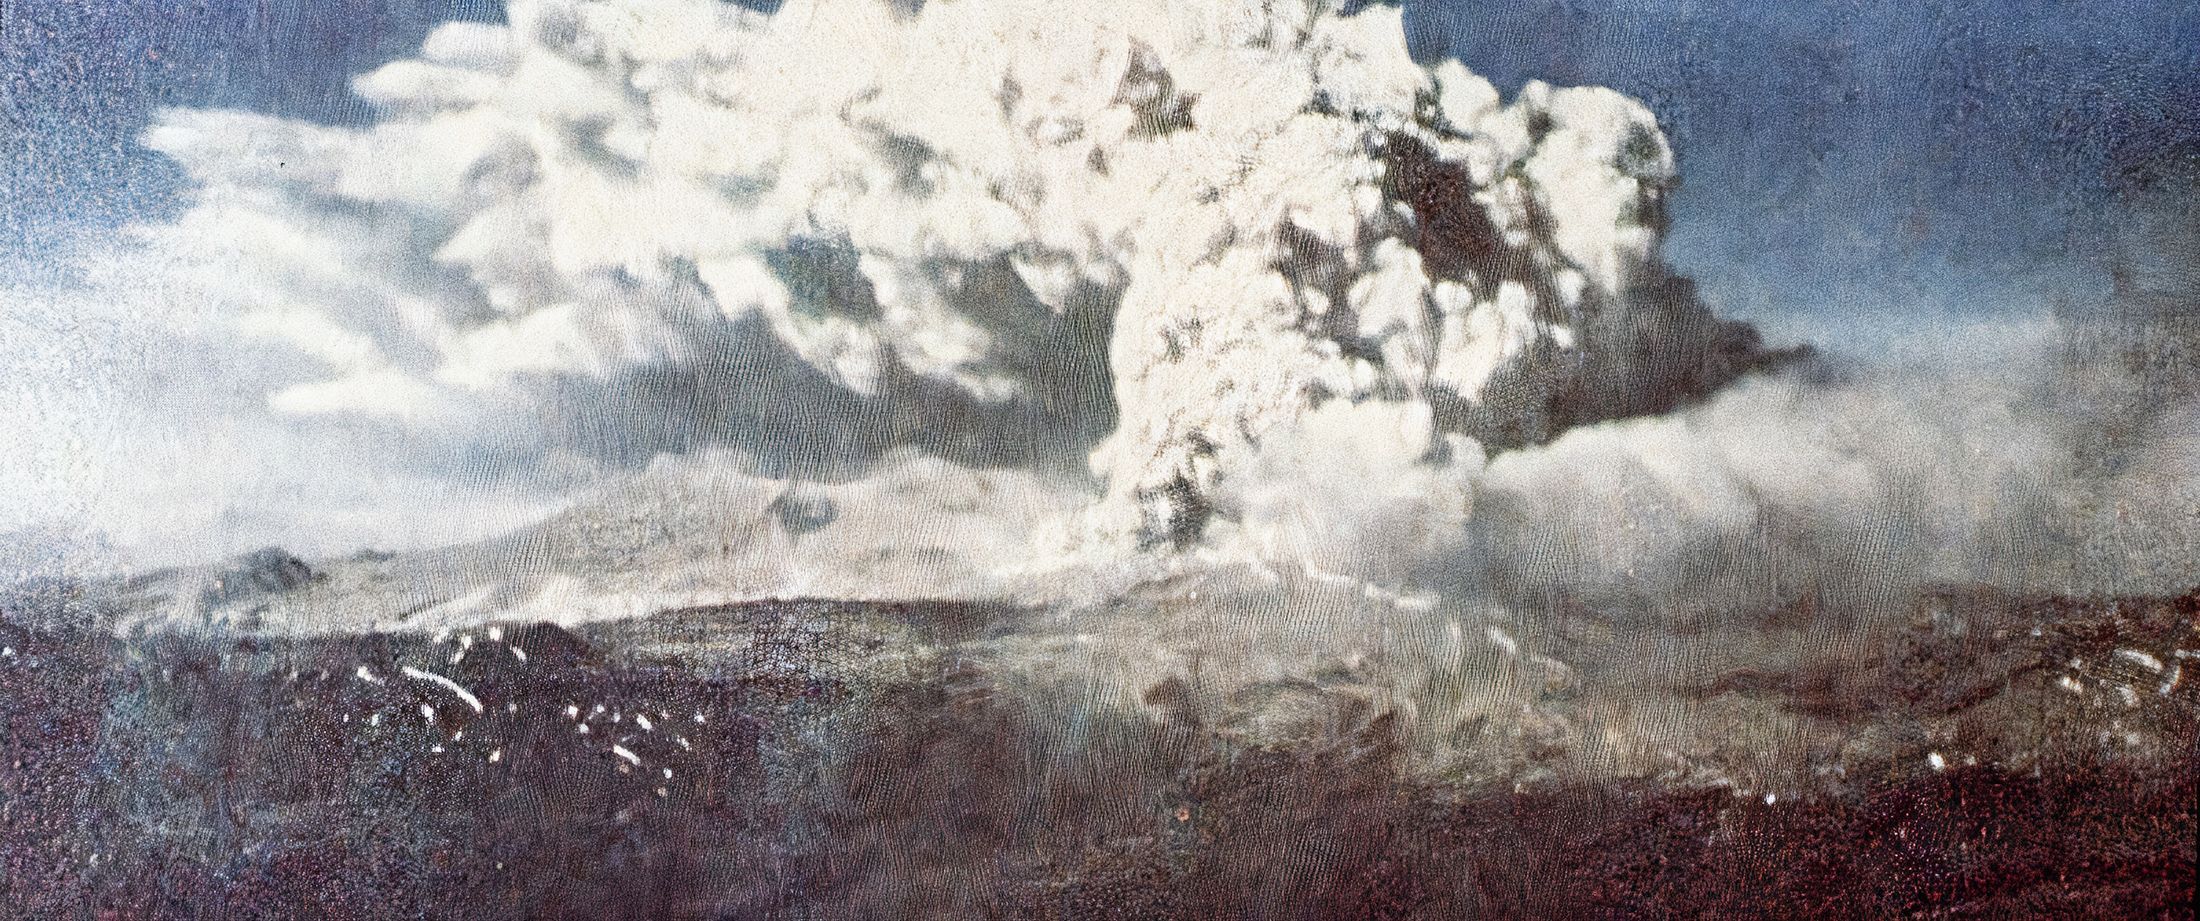 Jednorázové užití / Fotogalerie / Před 60 lety postihlo Chile nejsilnější zemětřesení v historii lidstva / NARA